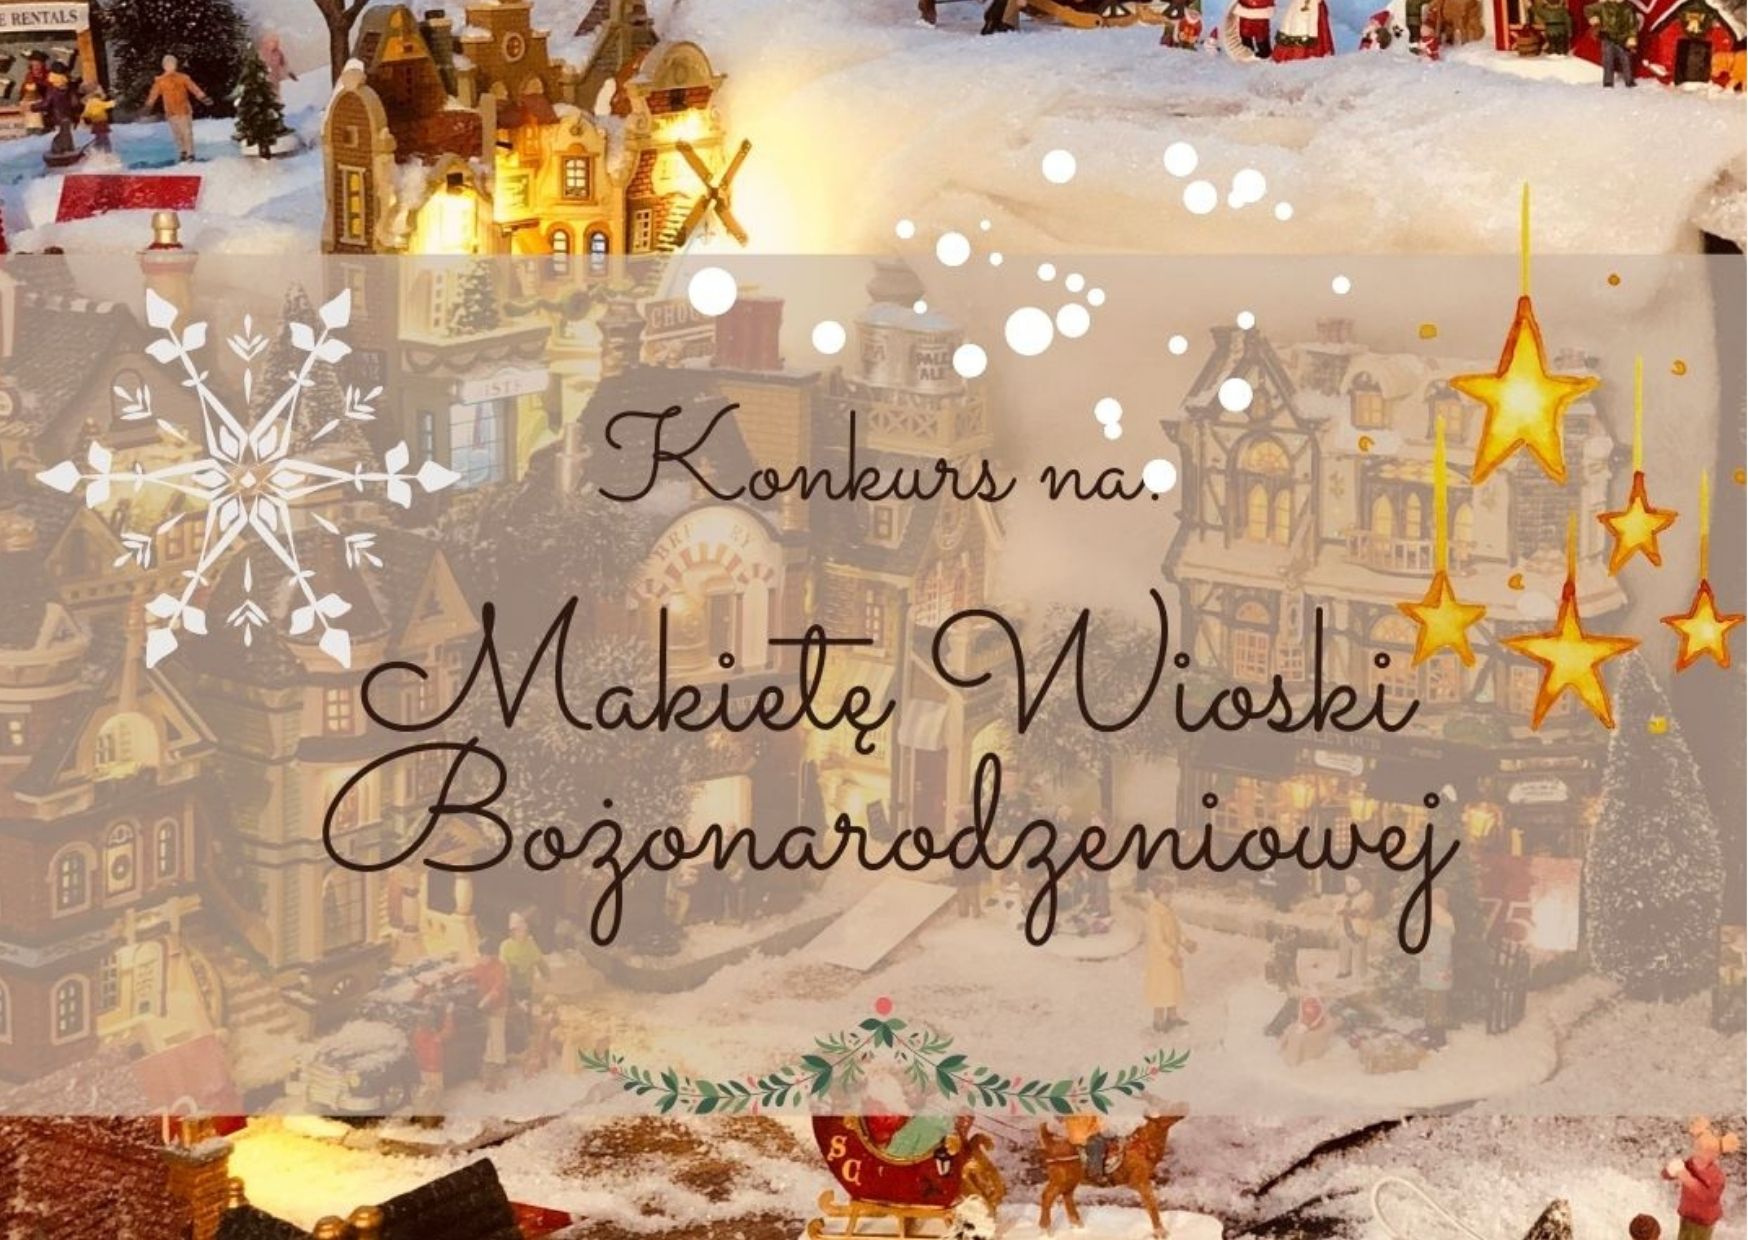 Grafika poglądowa do treści; tematyka bozonarodzeniowa, domki, lampki, śnieżynki, choinki, w centralnym punkcie napis: konkurs na makietę wioski bożonarodzeniowej